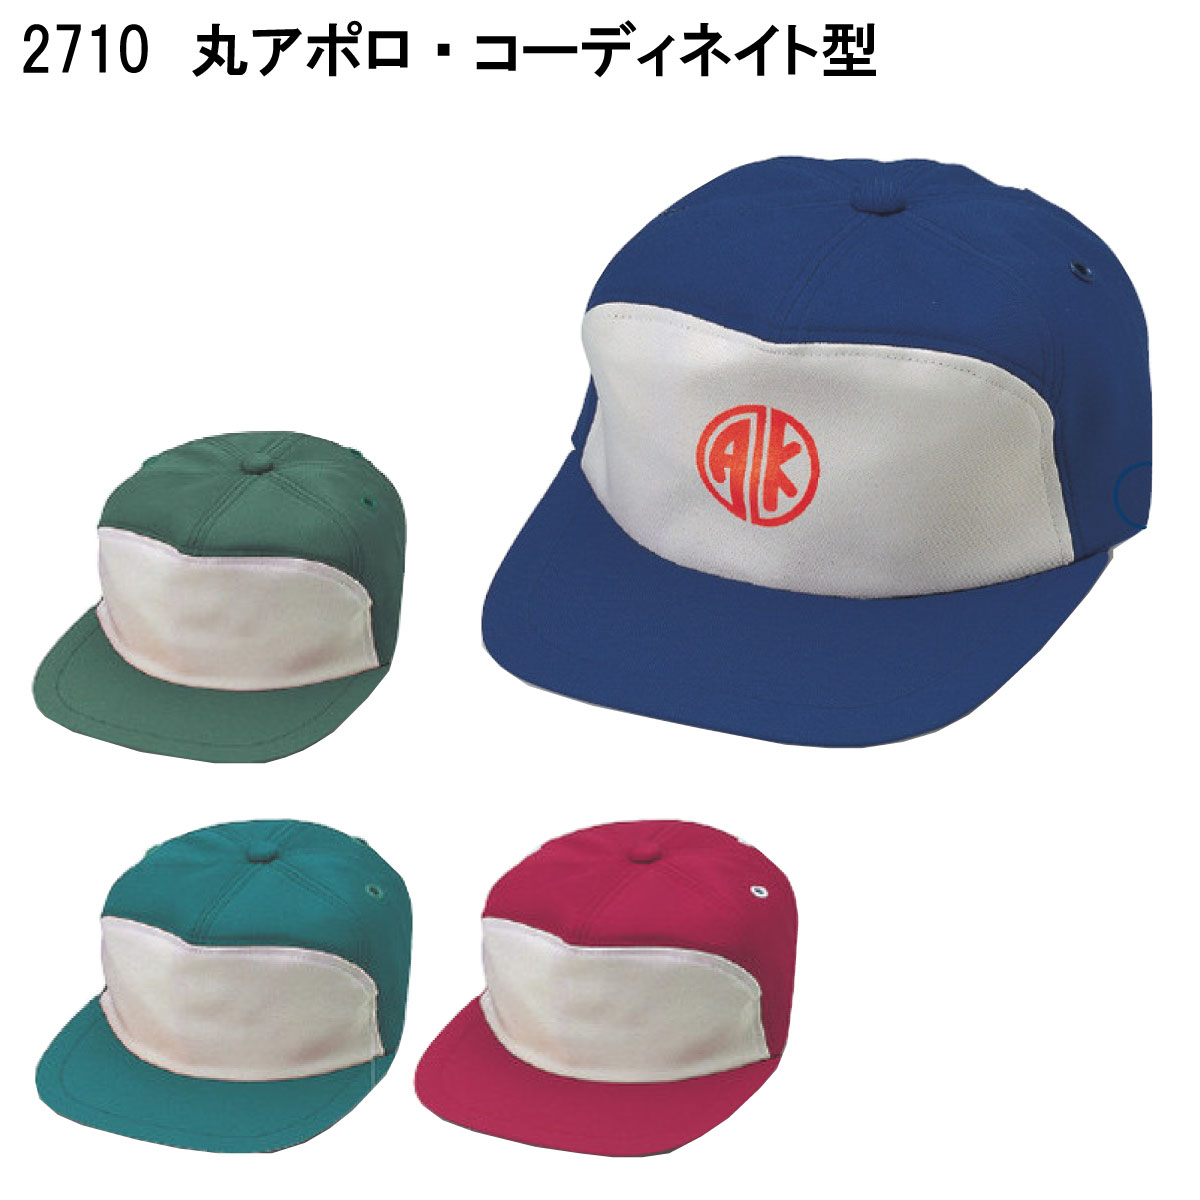 丸アポロ・コーディネイト型 2710 M〜LL 倉敷製帽 4